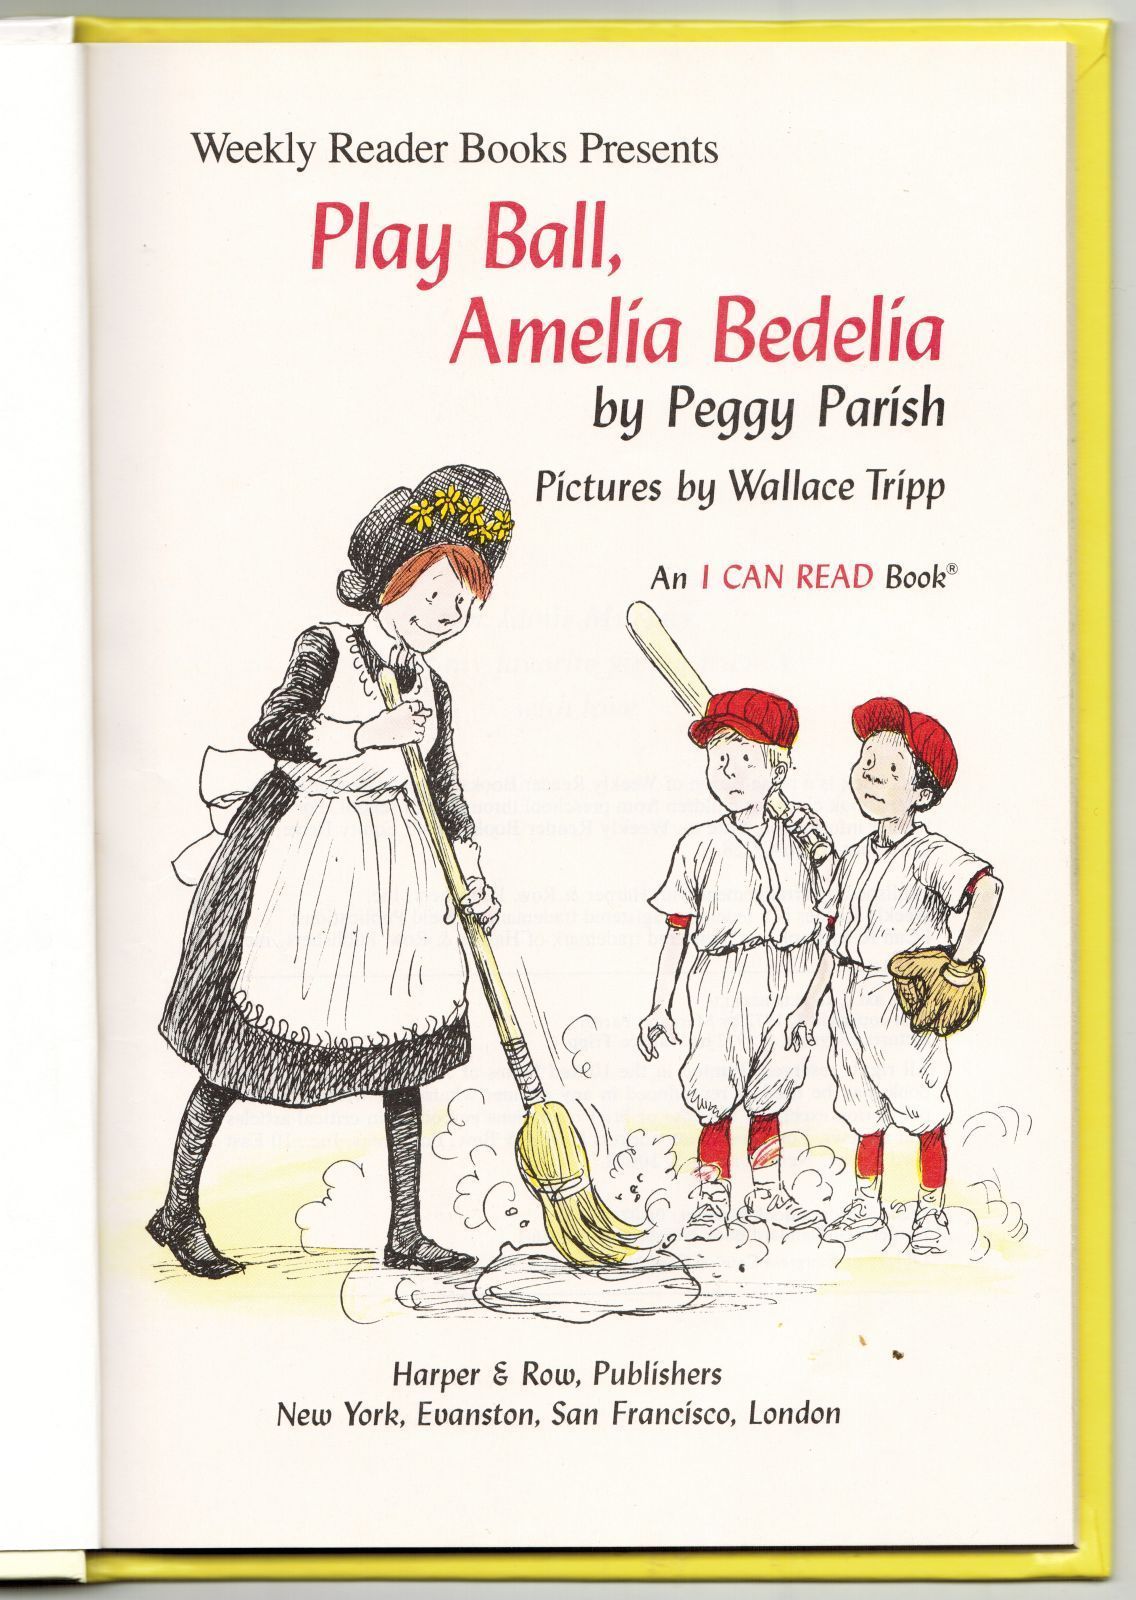 amelia bedelia by peggy parish